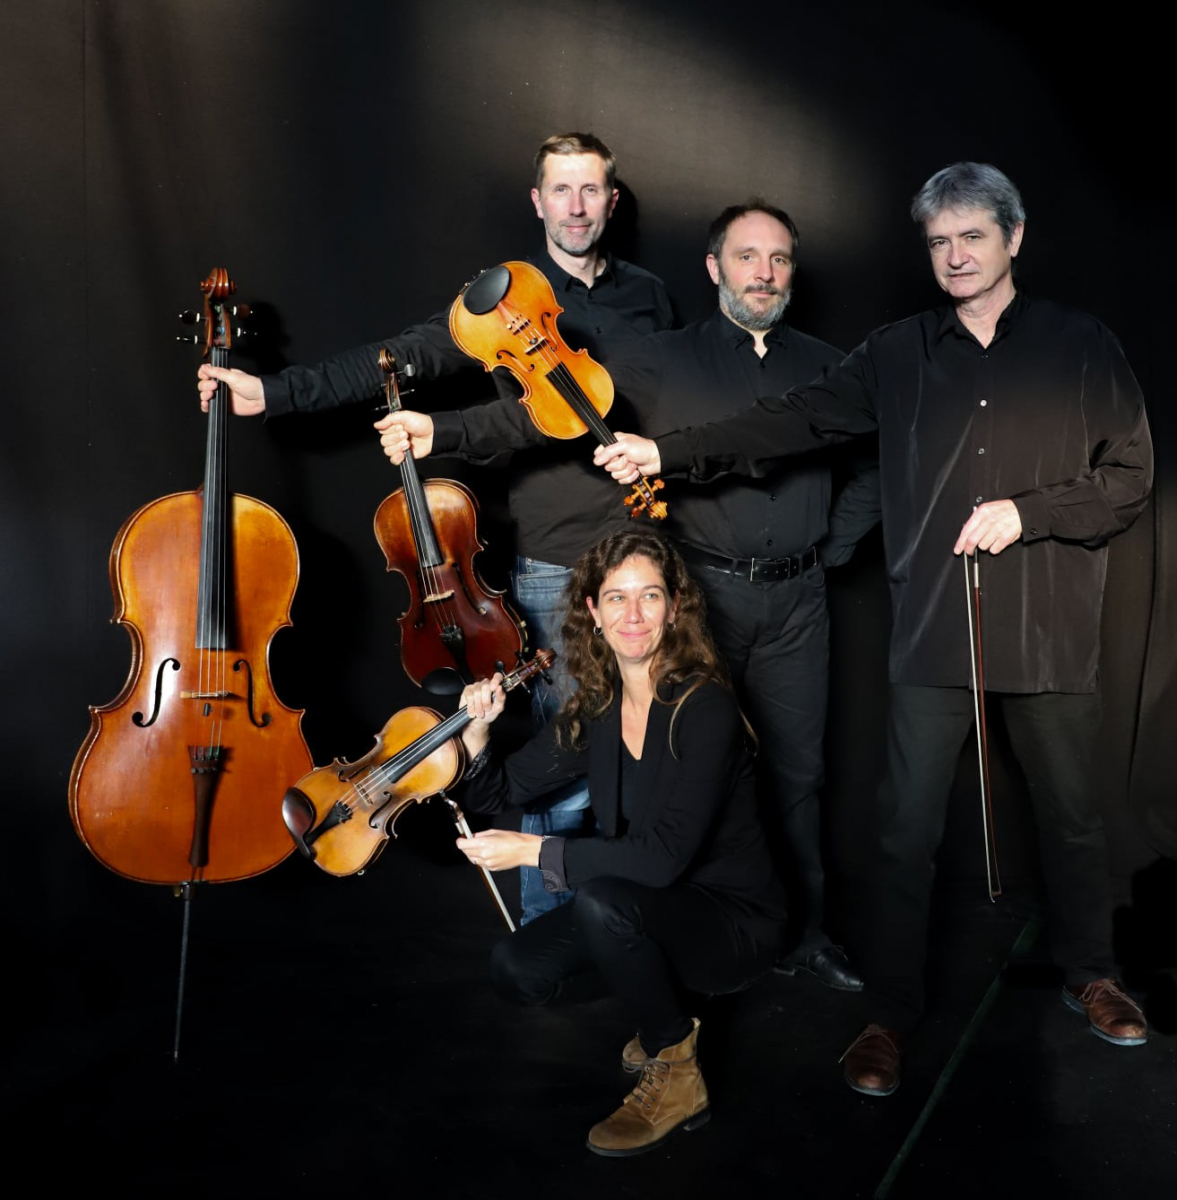 Le  concert du quatuor Arnaga prévu ce vendredi 8 avril à 20h30 à l'abbaye de Lahonce est reporté